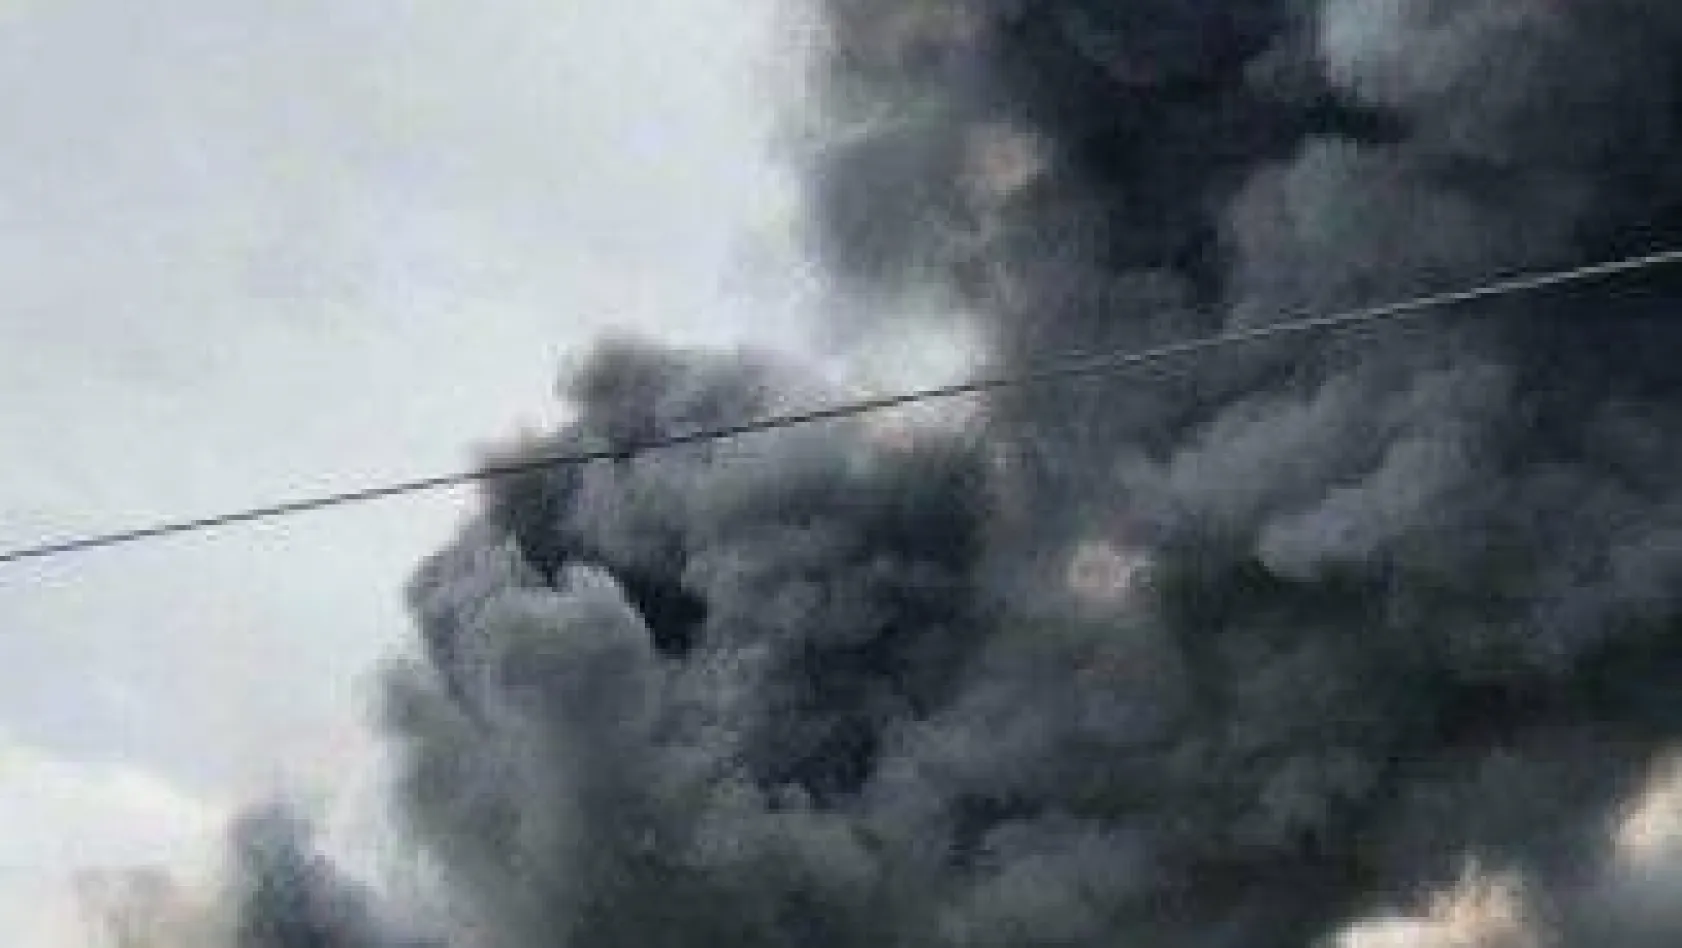 Silivri'de sünger fabrikasında çıkan yangın drone ile havadan görüntülendi.